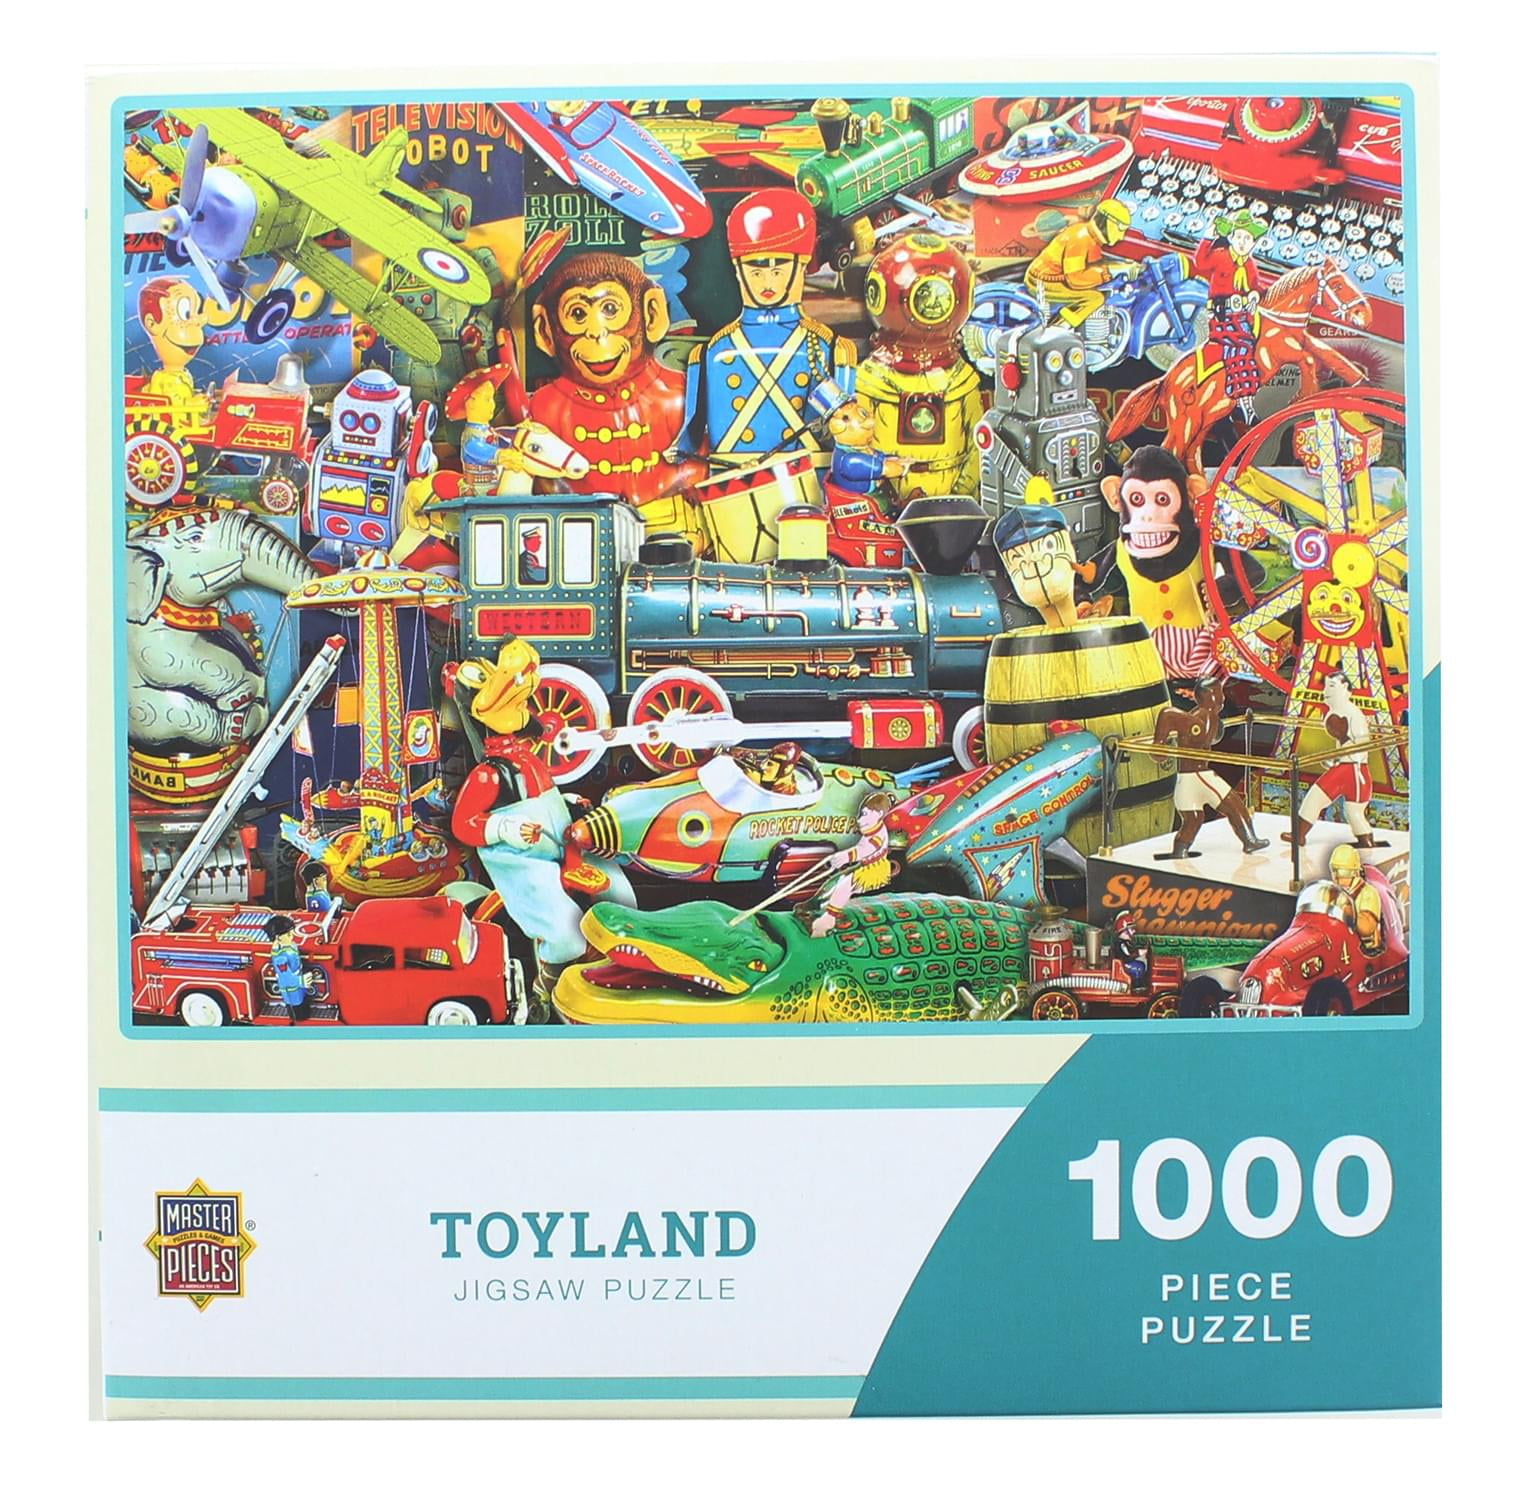 MasterPieces 1000 Piece Jigsaw Puzzle | Toyland - Walmart.com - Walmart.com